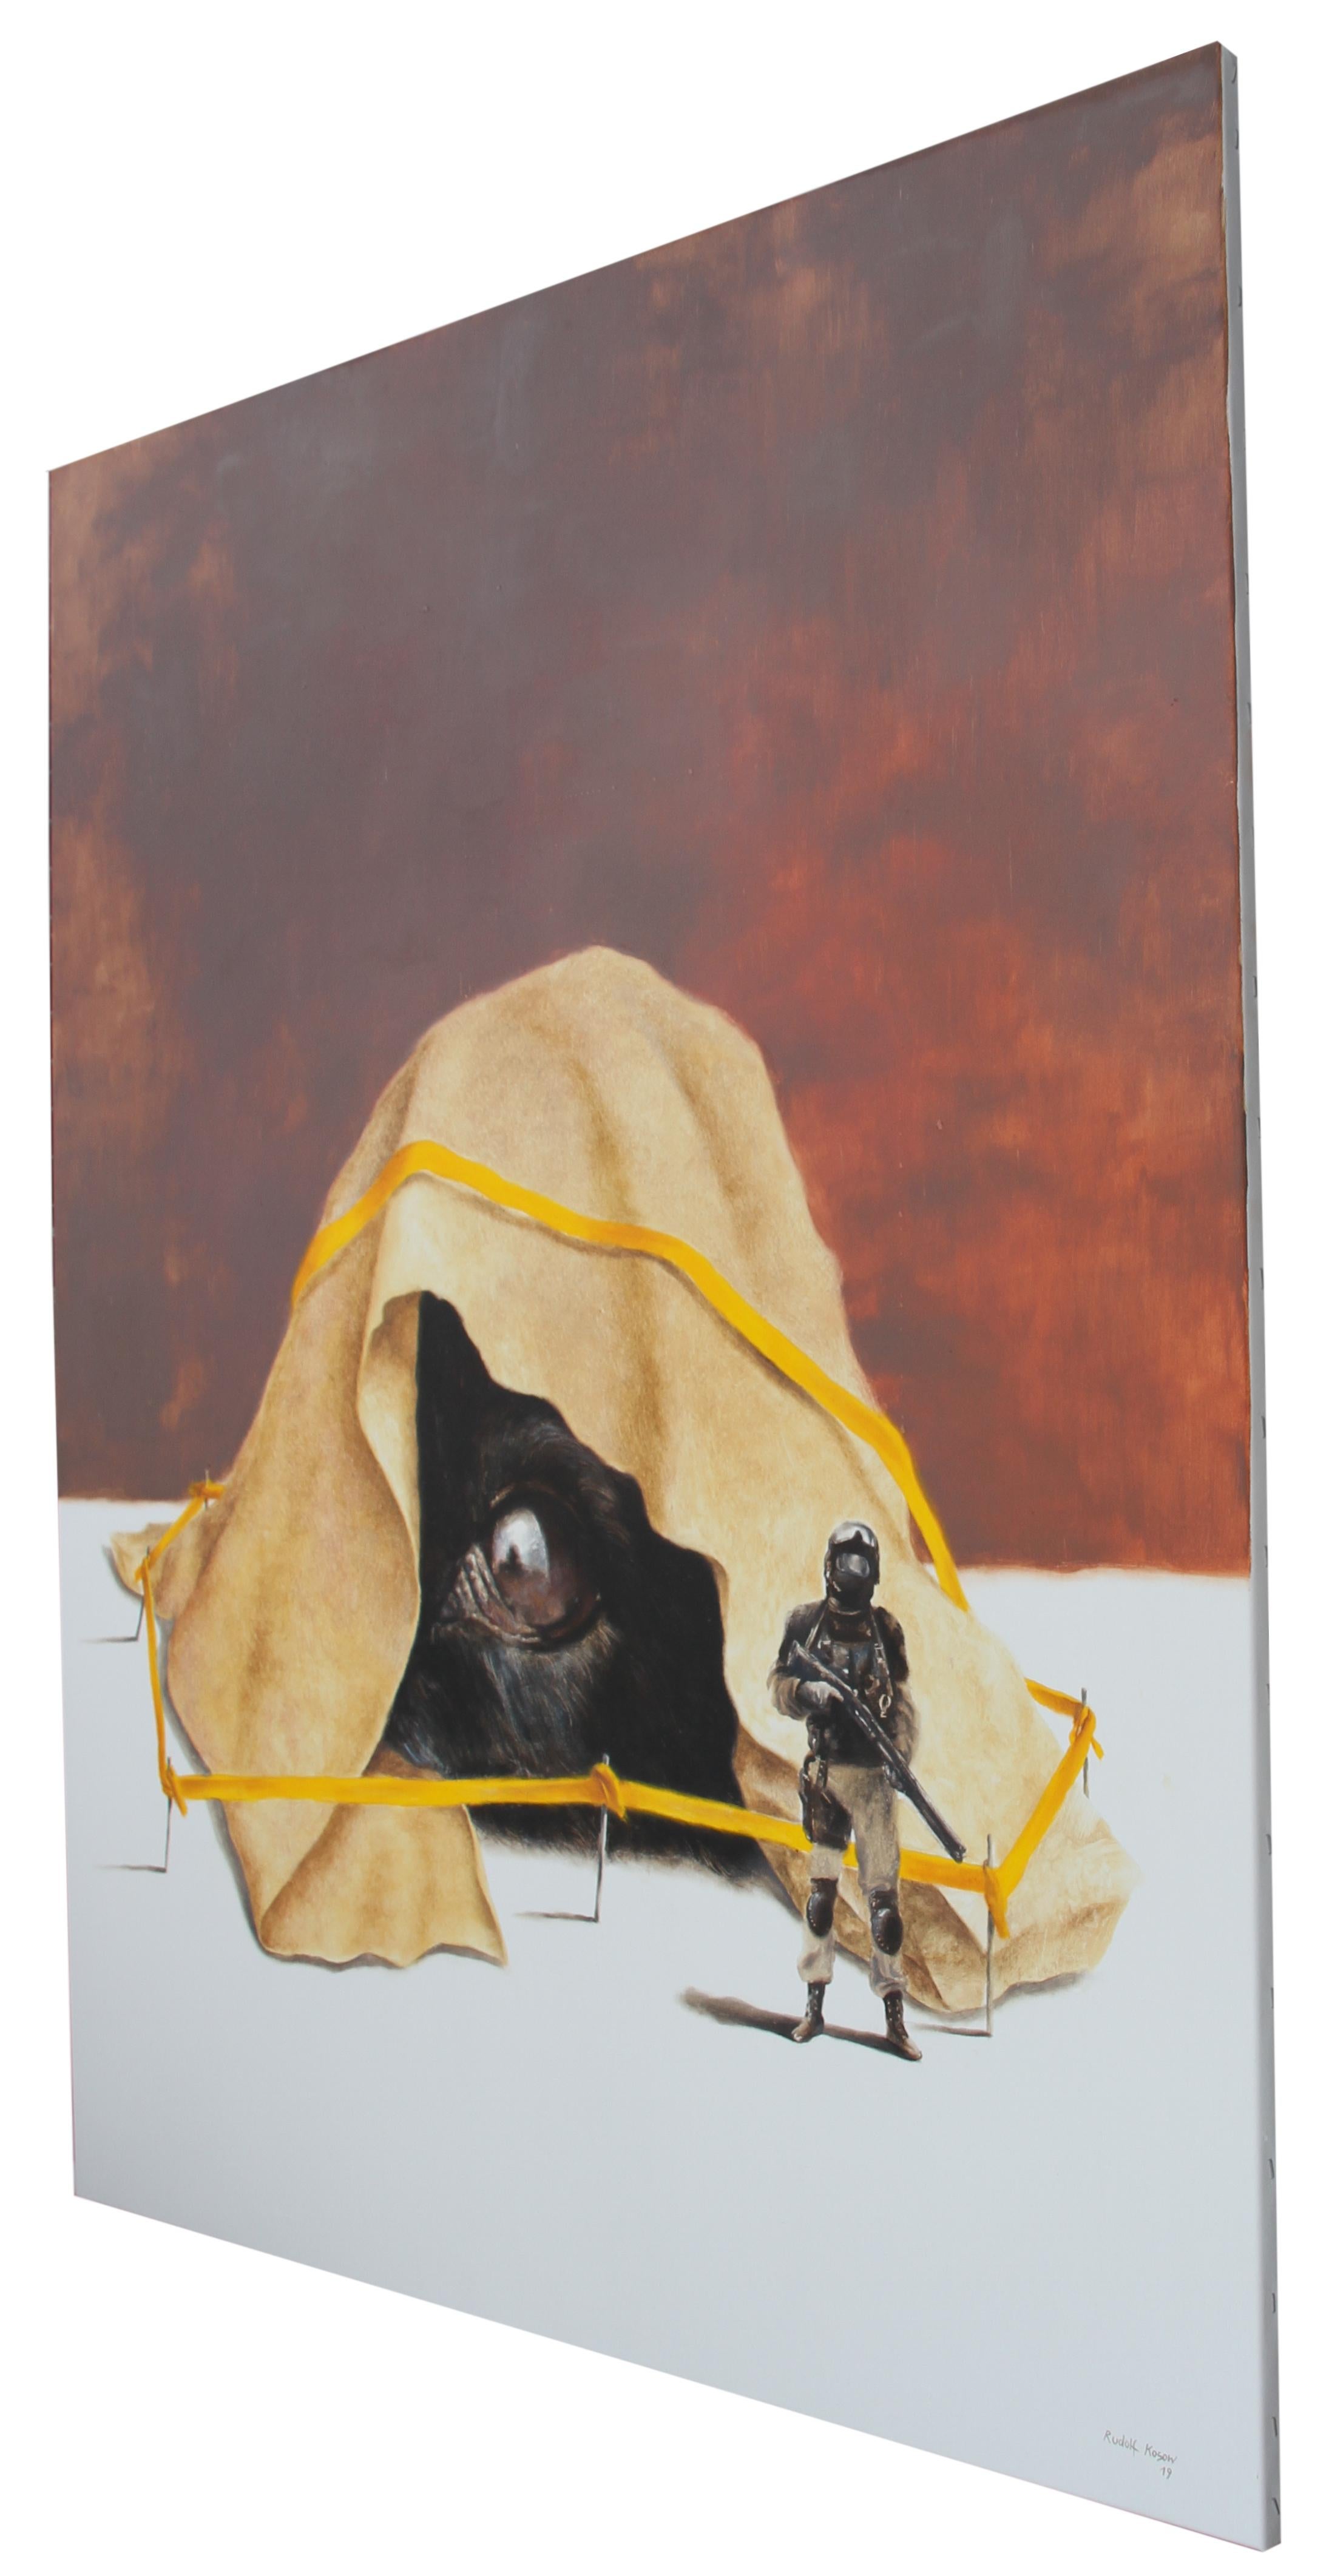 Stranger (chien soldat flic scène de crime surréaliste peinture à l'huile ruban jaune) - Painting de Rudolf Kosow